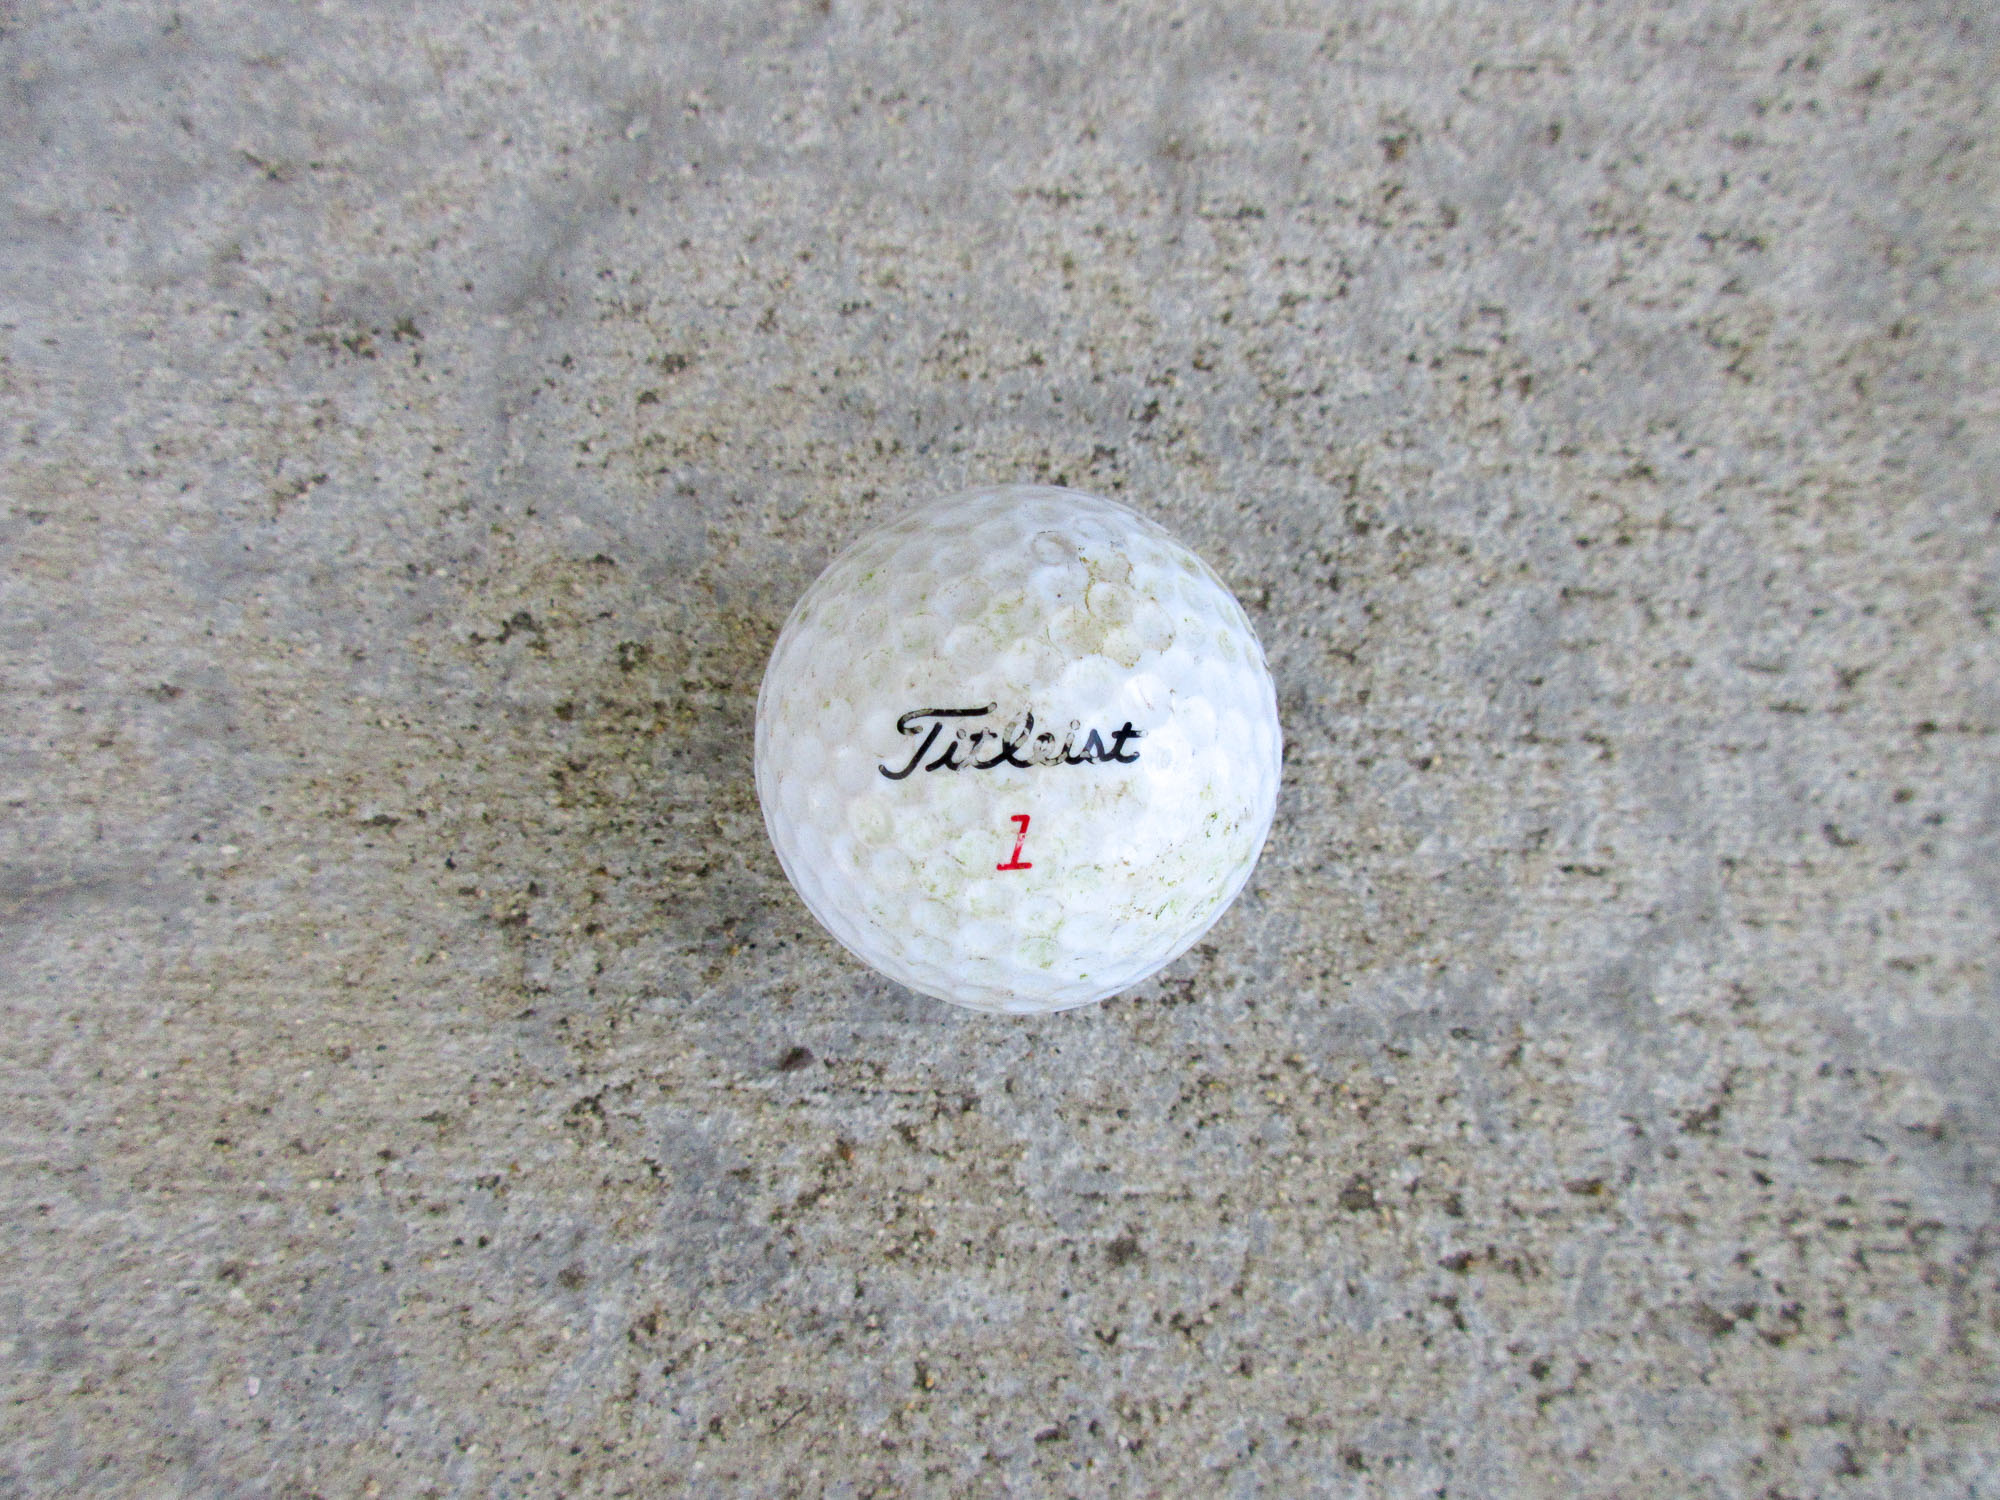 Titleist golf ball